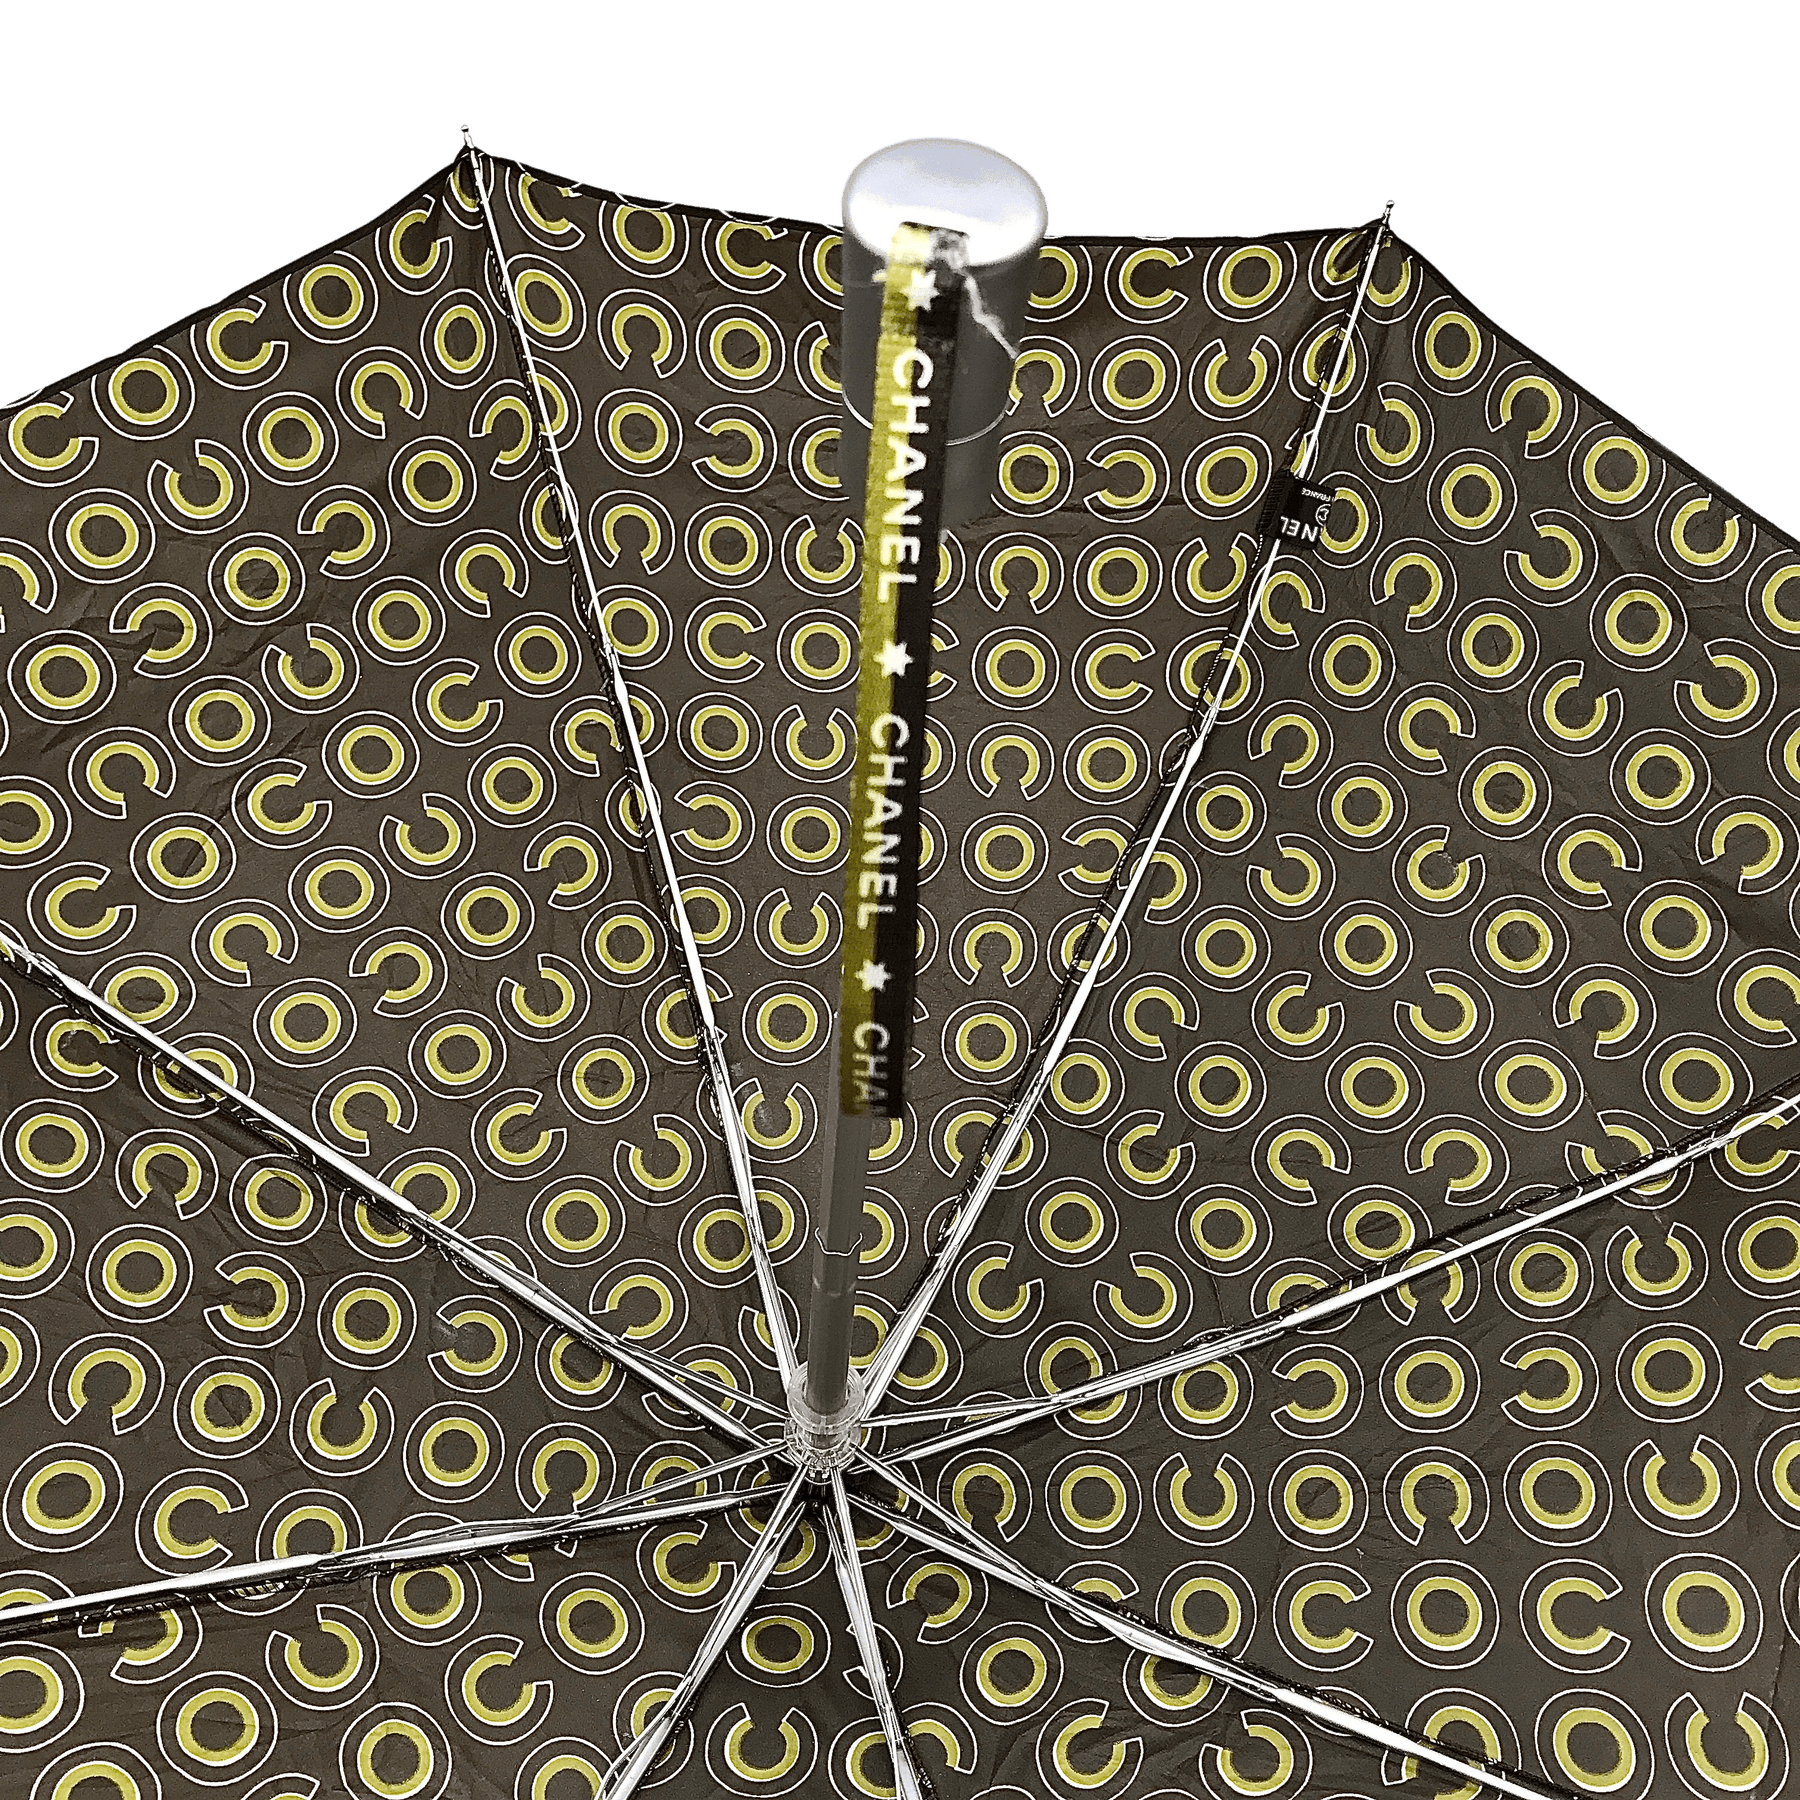 chanel rain umbrella